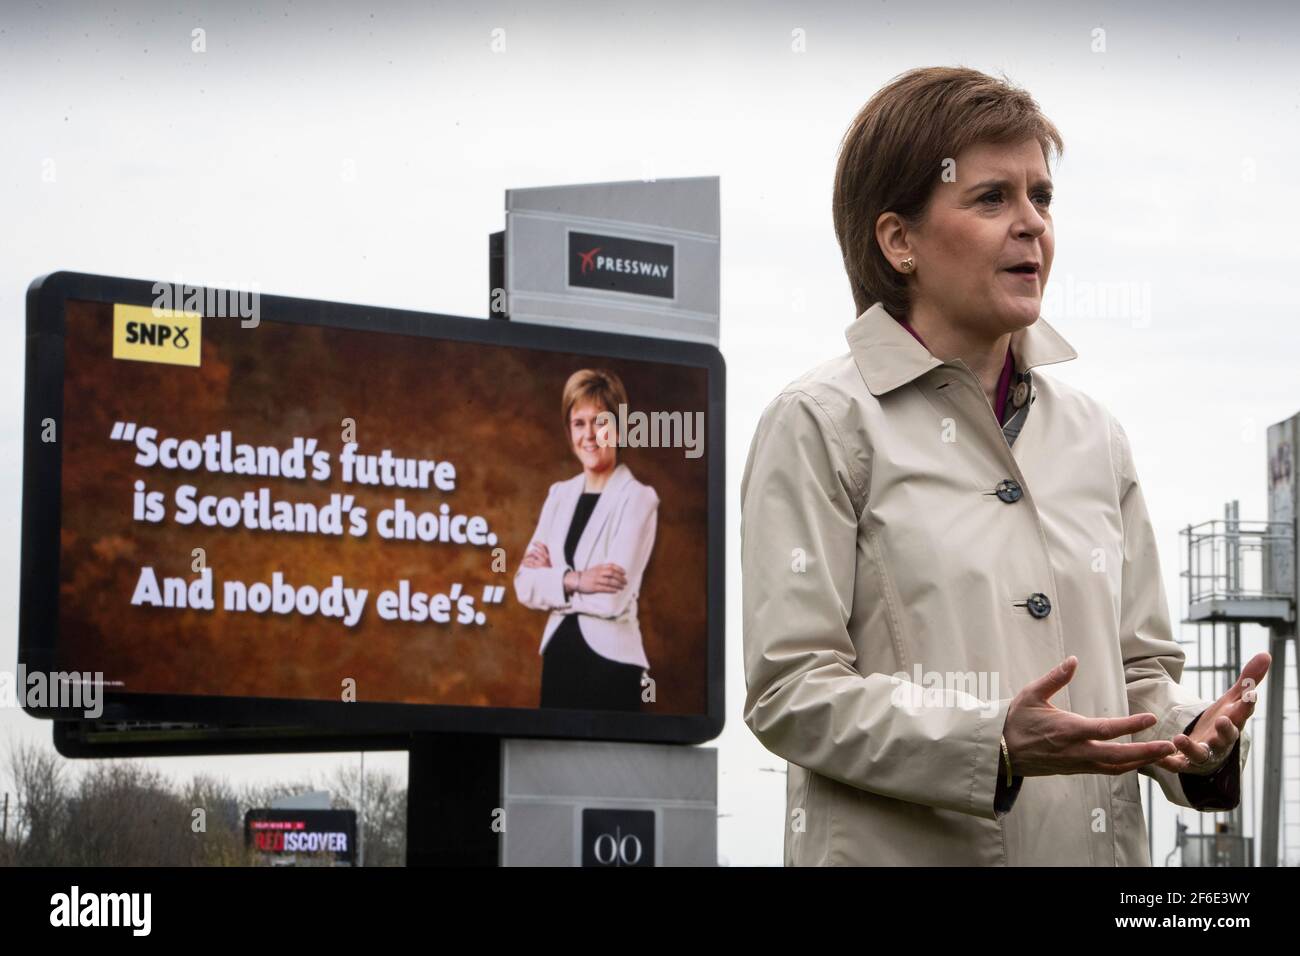 Erste Ministerin Nicola Sturgeon, Vorsitzende der Scottish National Party, spricht mit der Kamera in Partick in Glasgow, Schottland, wo sie den virtuellen SNP-Wahlkampf vor der bevorstehenden schottischen Parlamentswahl am 6. Mai 2021 startet. Bilddatum: Mittwoch, 31. März 2021. Stockfoto